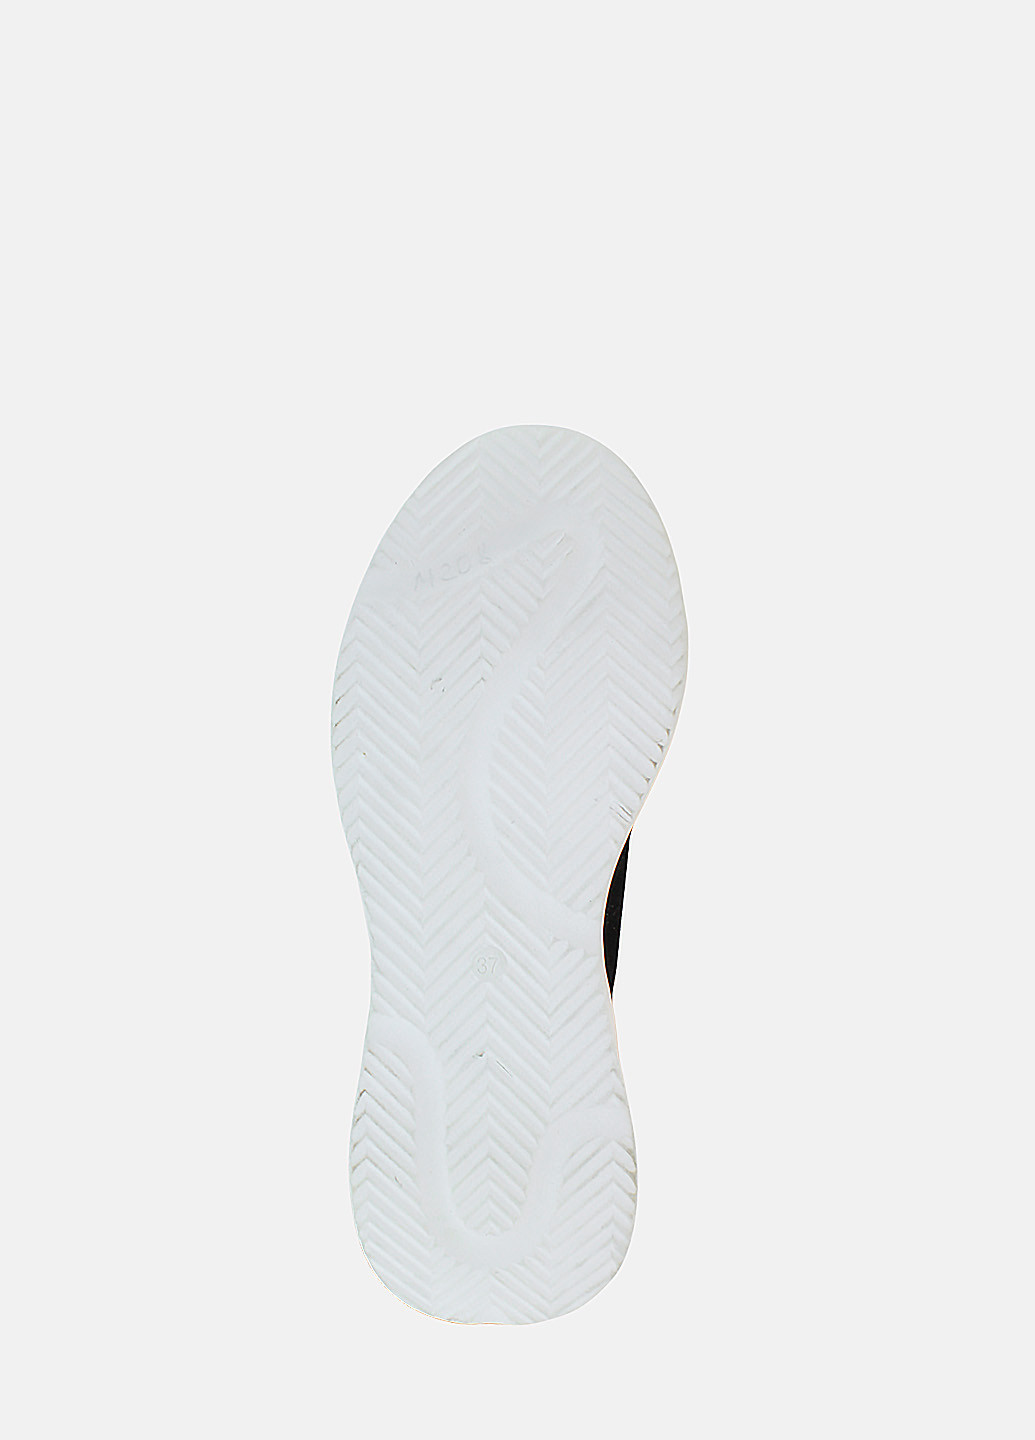 Зимние ботинки rdm208 черный Daragani из натуральной замши